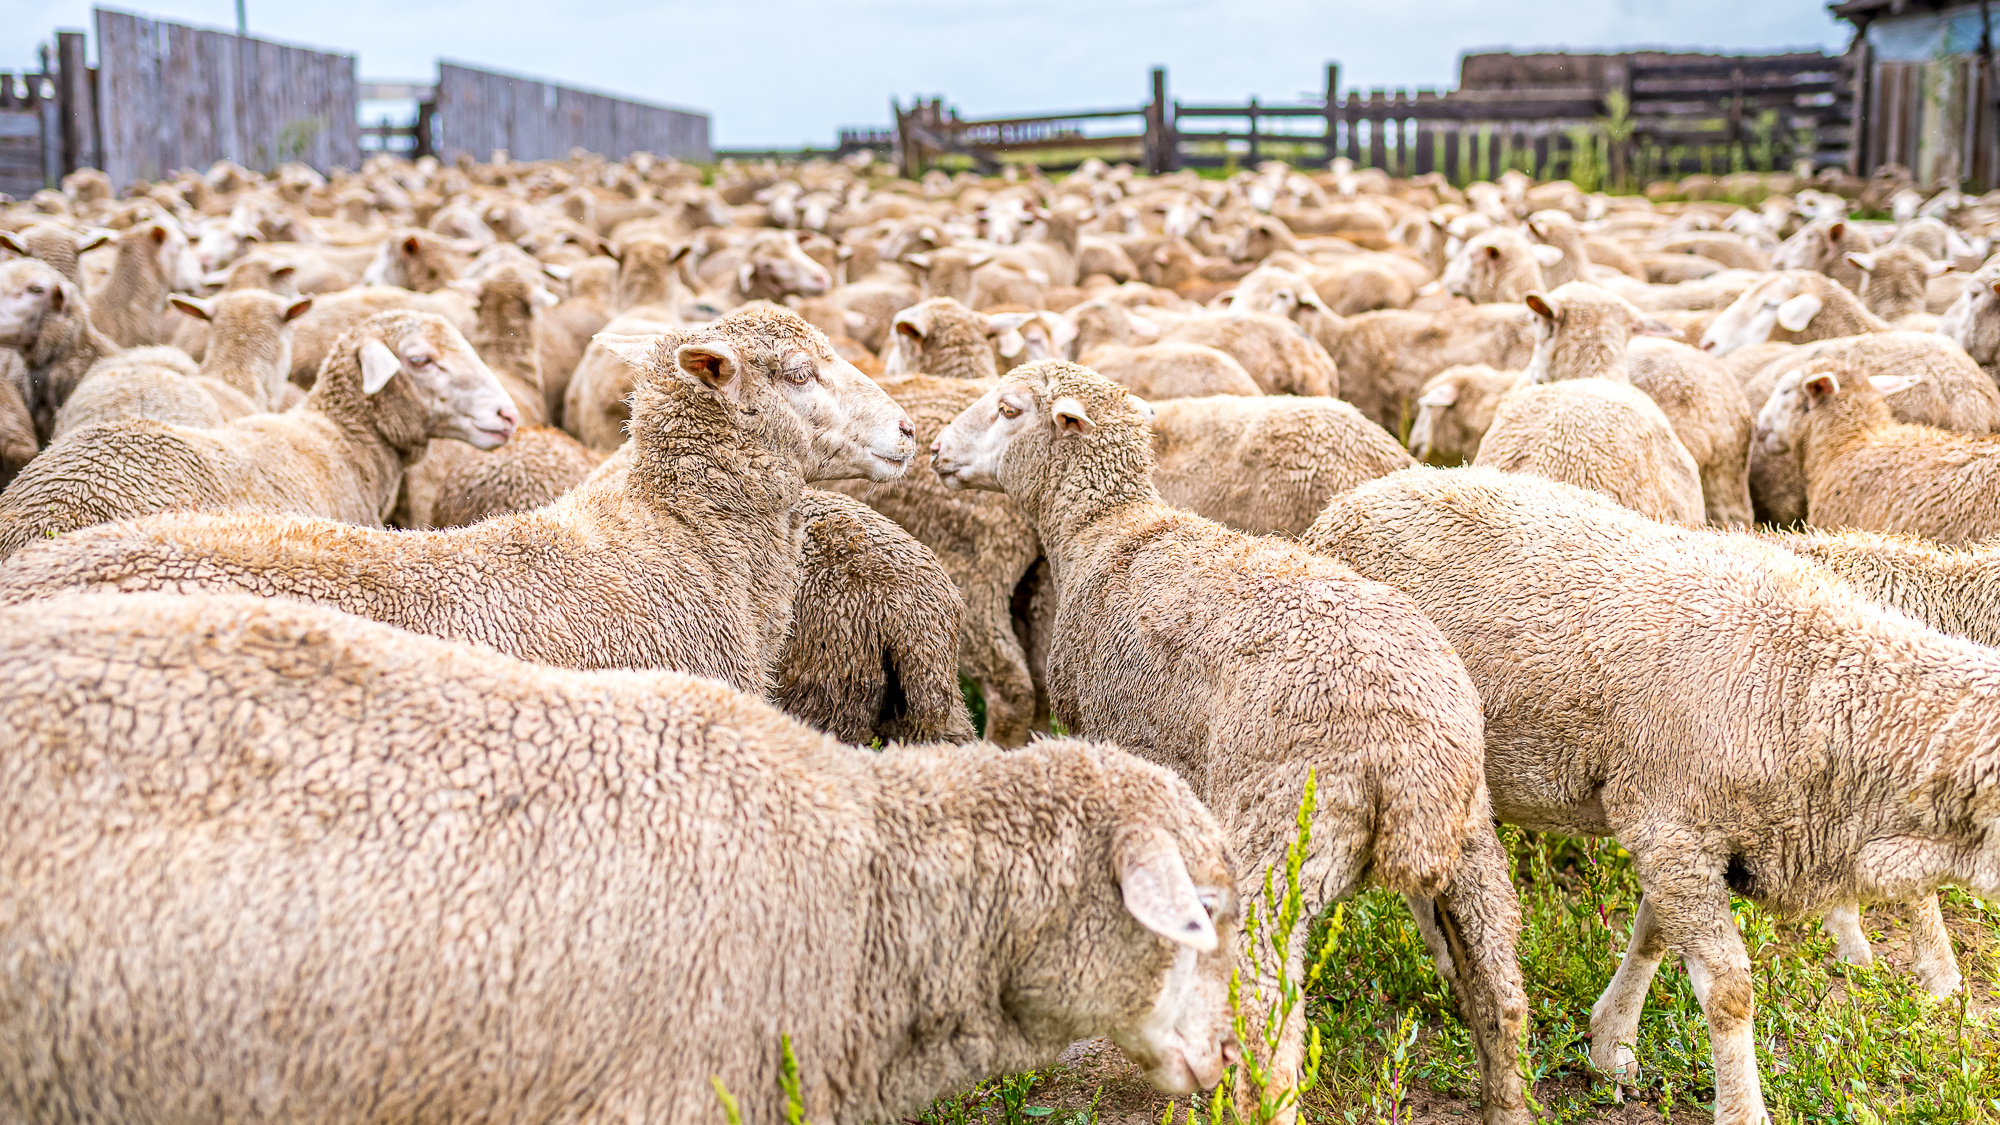 Первый фестиваль стрижки овец пройдёт в Забайкалье летом. Событие хотят сделать узнаваемым в стране